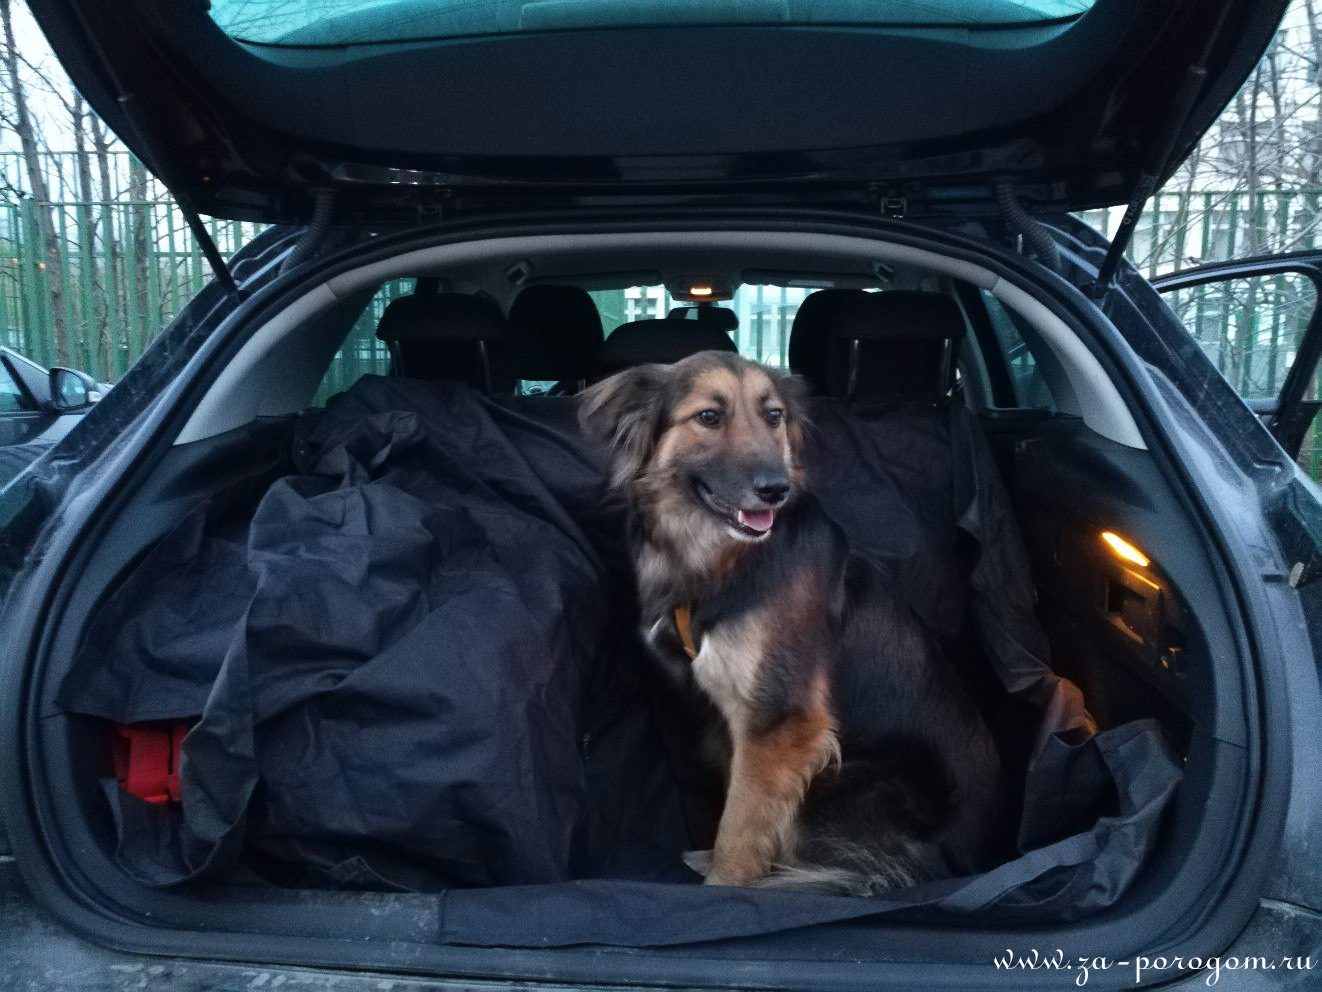 В грузию на машине с собакой